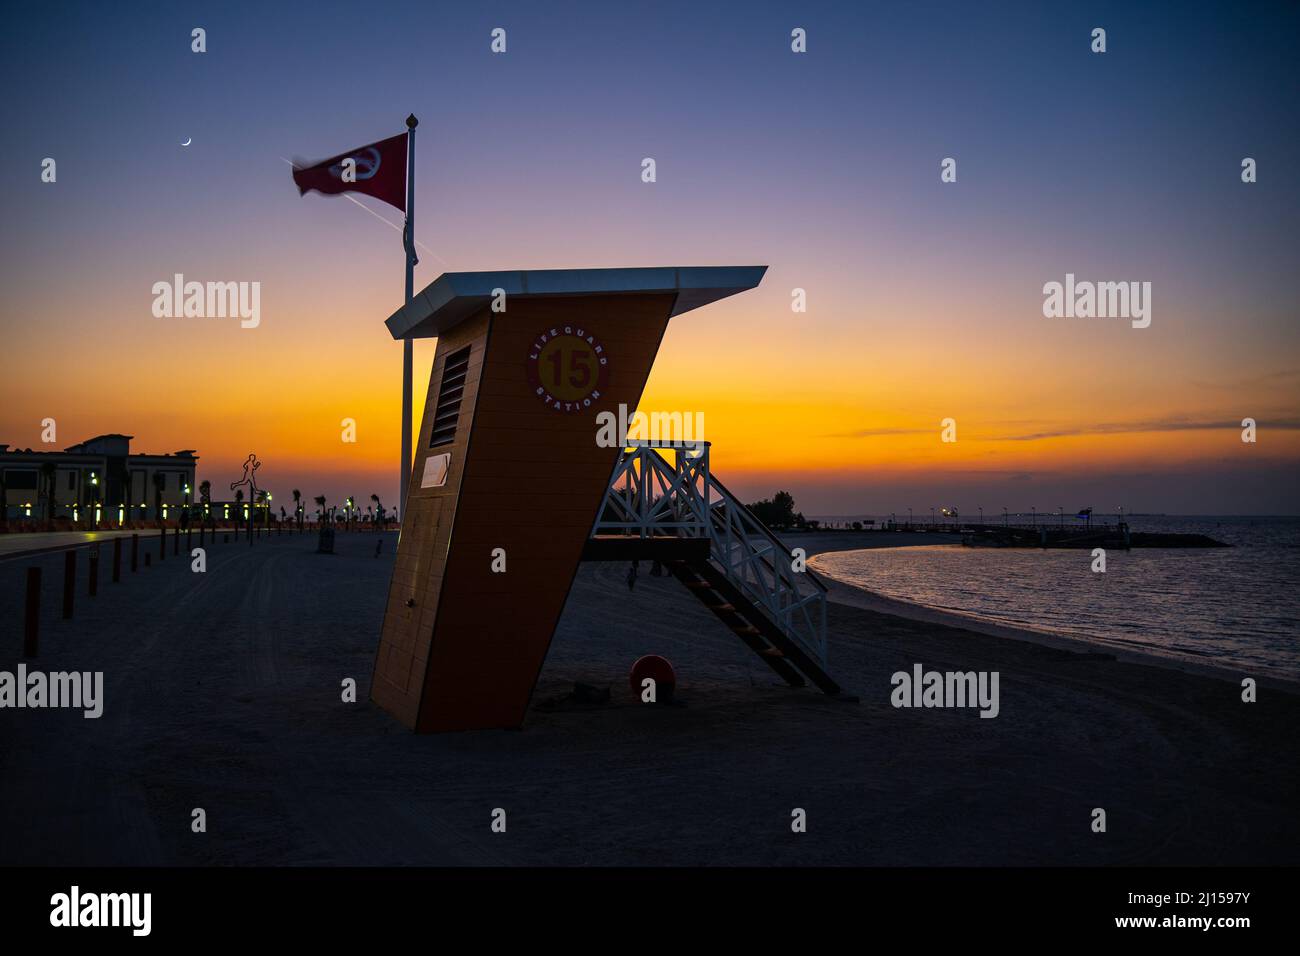 Dubai, UAE - Dec 06 2021: Lifeguard station at Jumeirah Beach Dubai during beautiful sunset Stock Photo